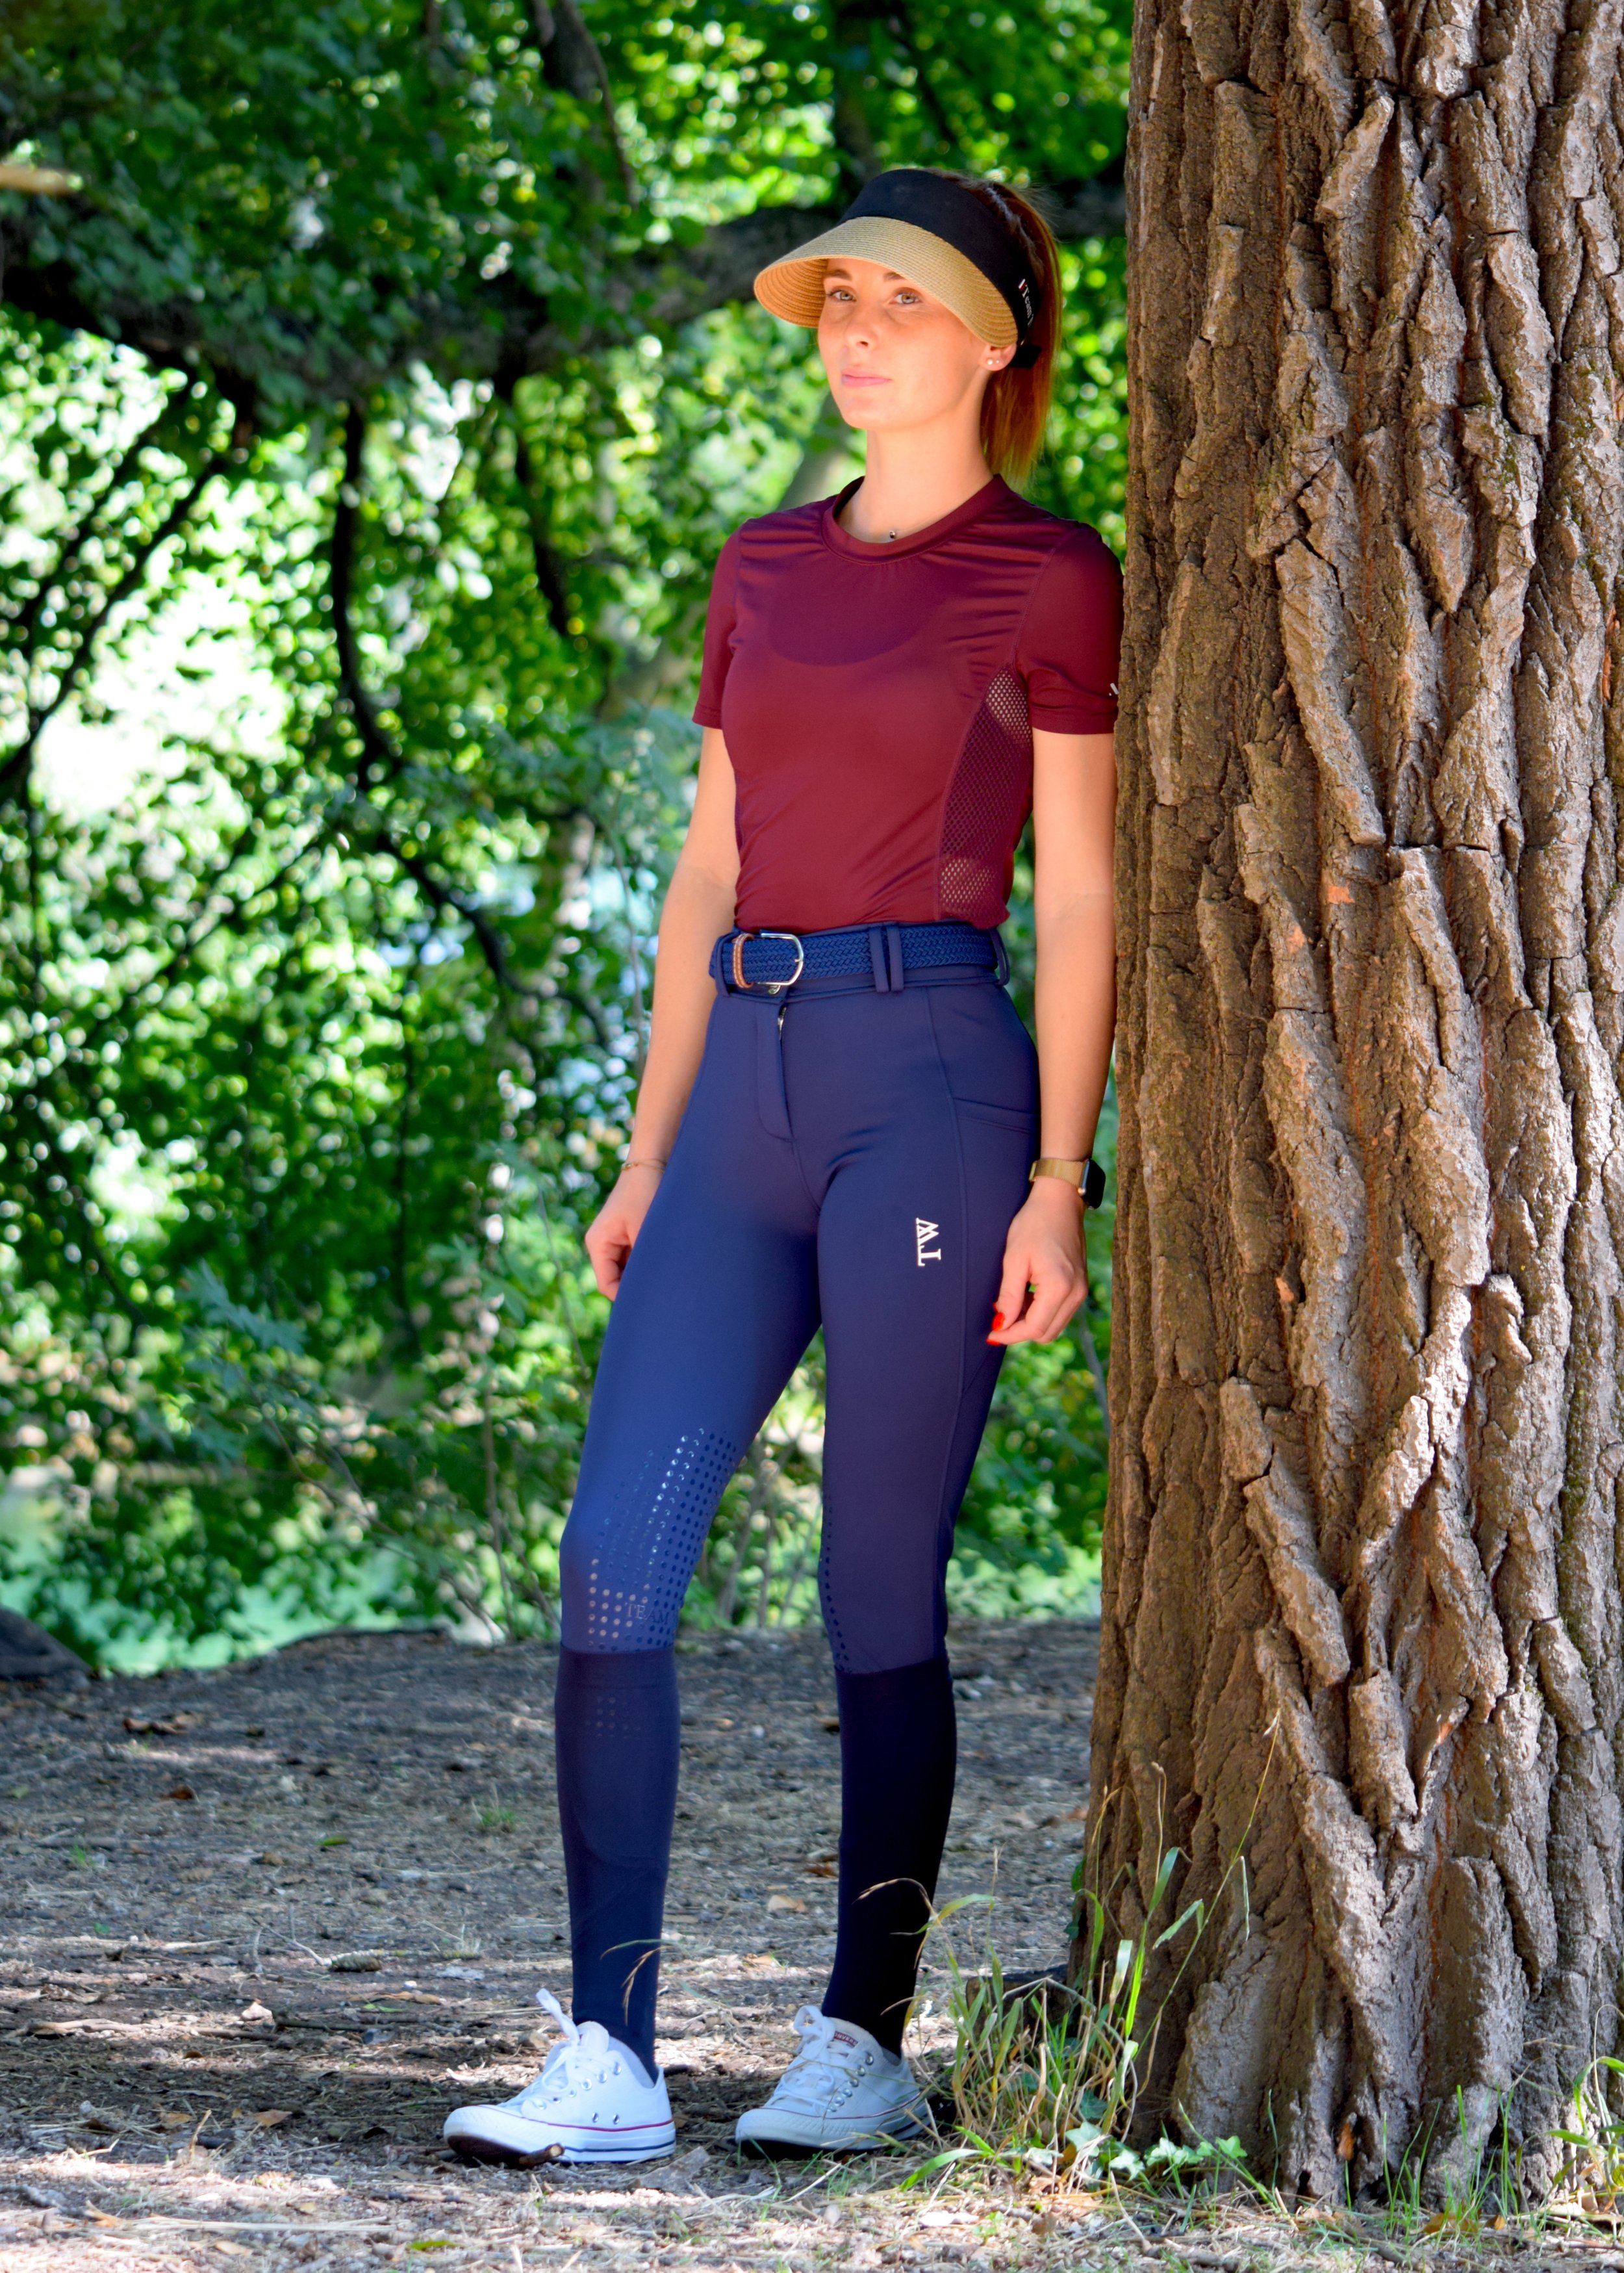 Pantalon Itôt / T-Shirt Lead Excellence / Visière Jenna  - Un pantalon taille haute très confortable grâce à son tissu seconde peau. Un tissu extensible, deux poches latérales de chaque coté, un grip en silicone à l’intérieur des genoux. Un t-shirt de port technique, un Empiècement mesh en haut du dos et sur les cotés pour une aération optimale, combiner à un tissu extensible pour une liberté totale des mouvements. Une visière chic et élégante, réglable grâce à une bande velcro.  Attache antidérapante amovible pour fixation sur une  bombe. 